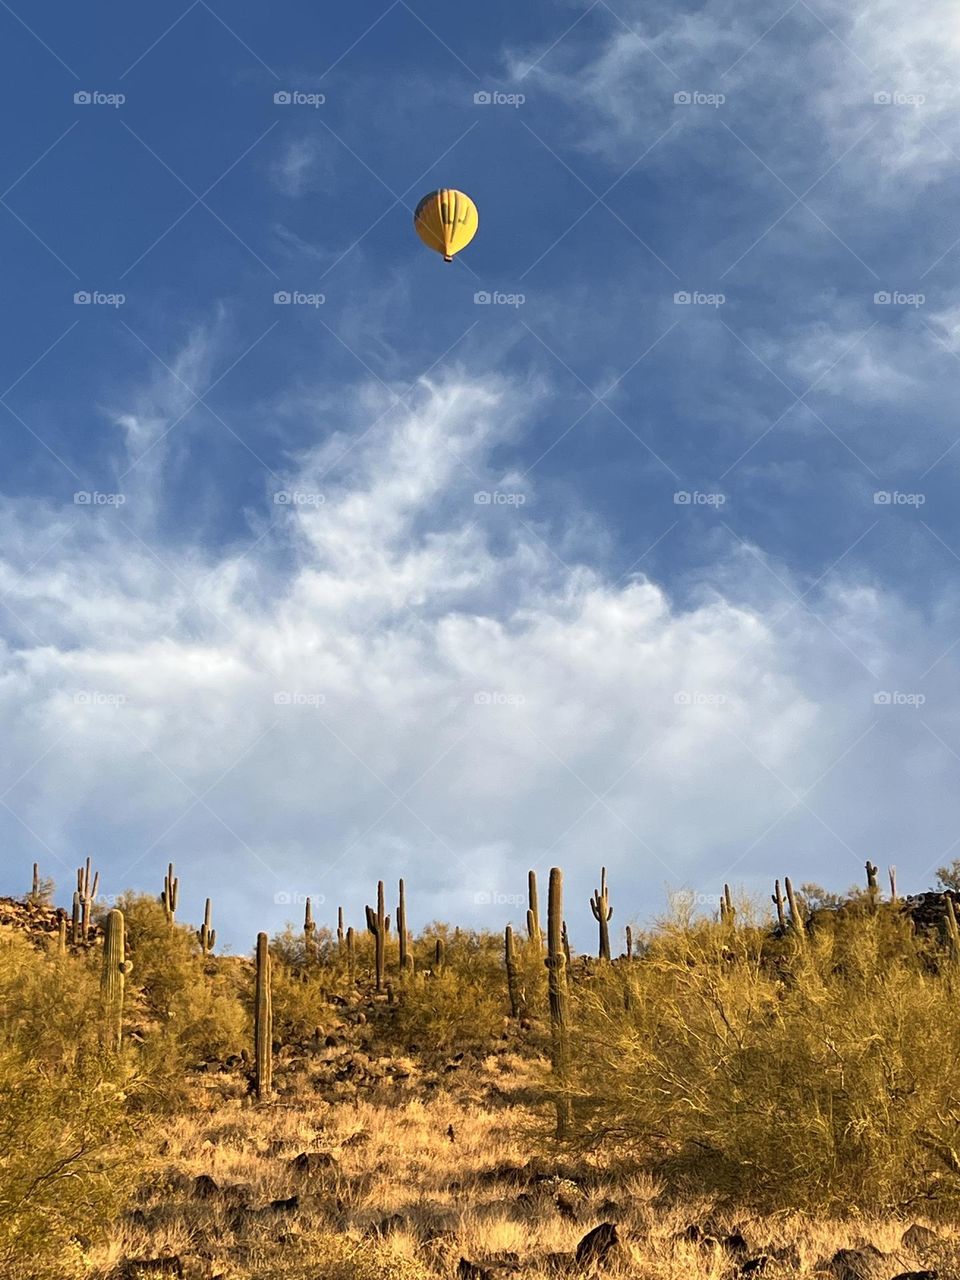 Desert balloons